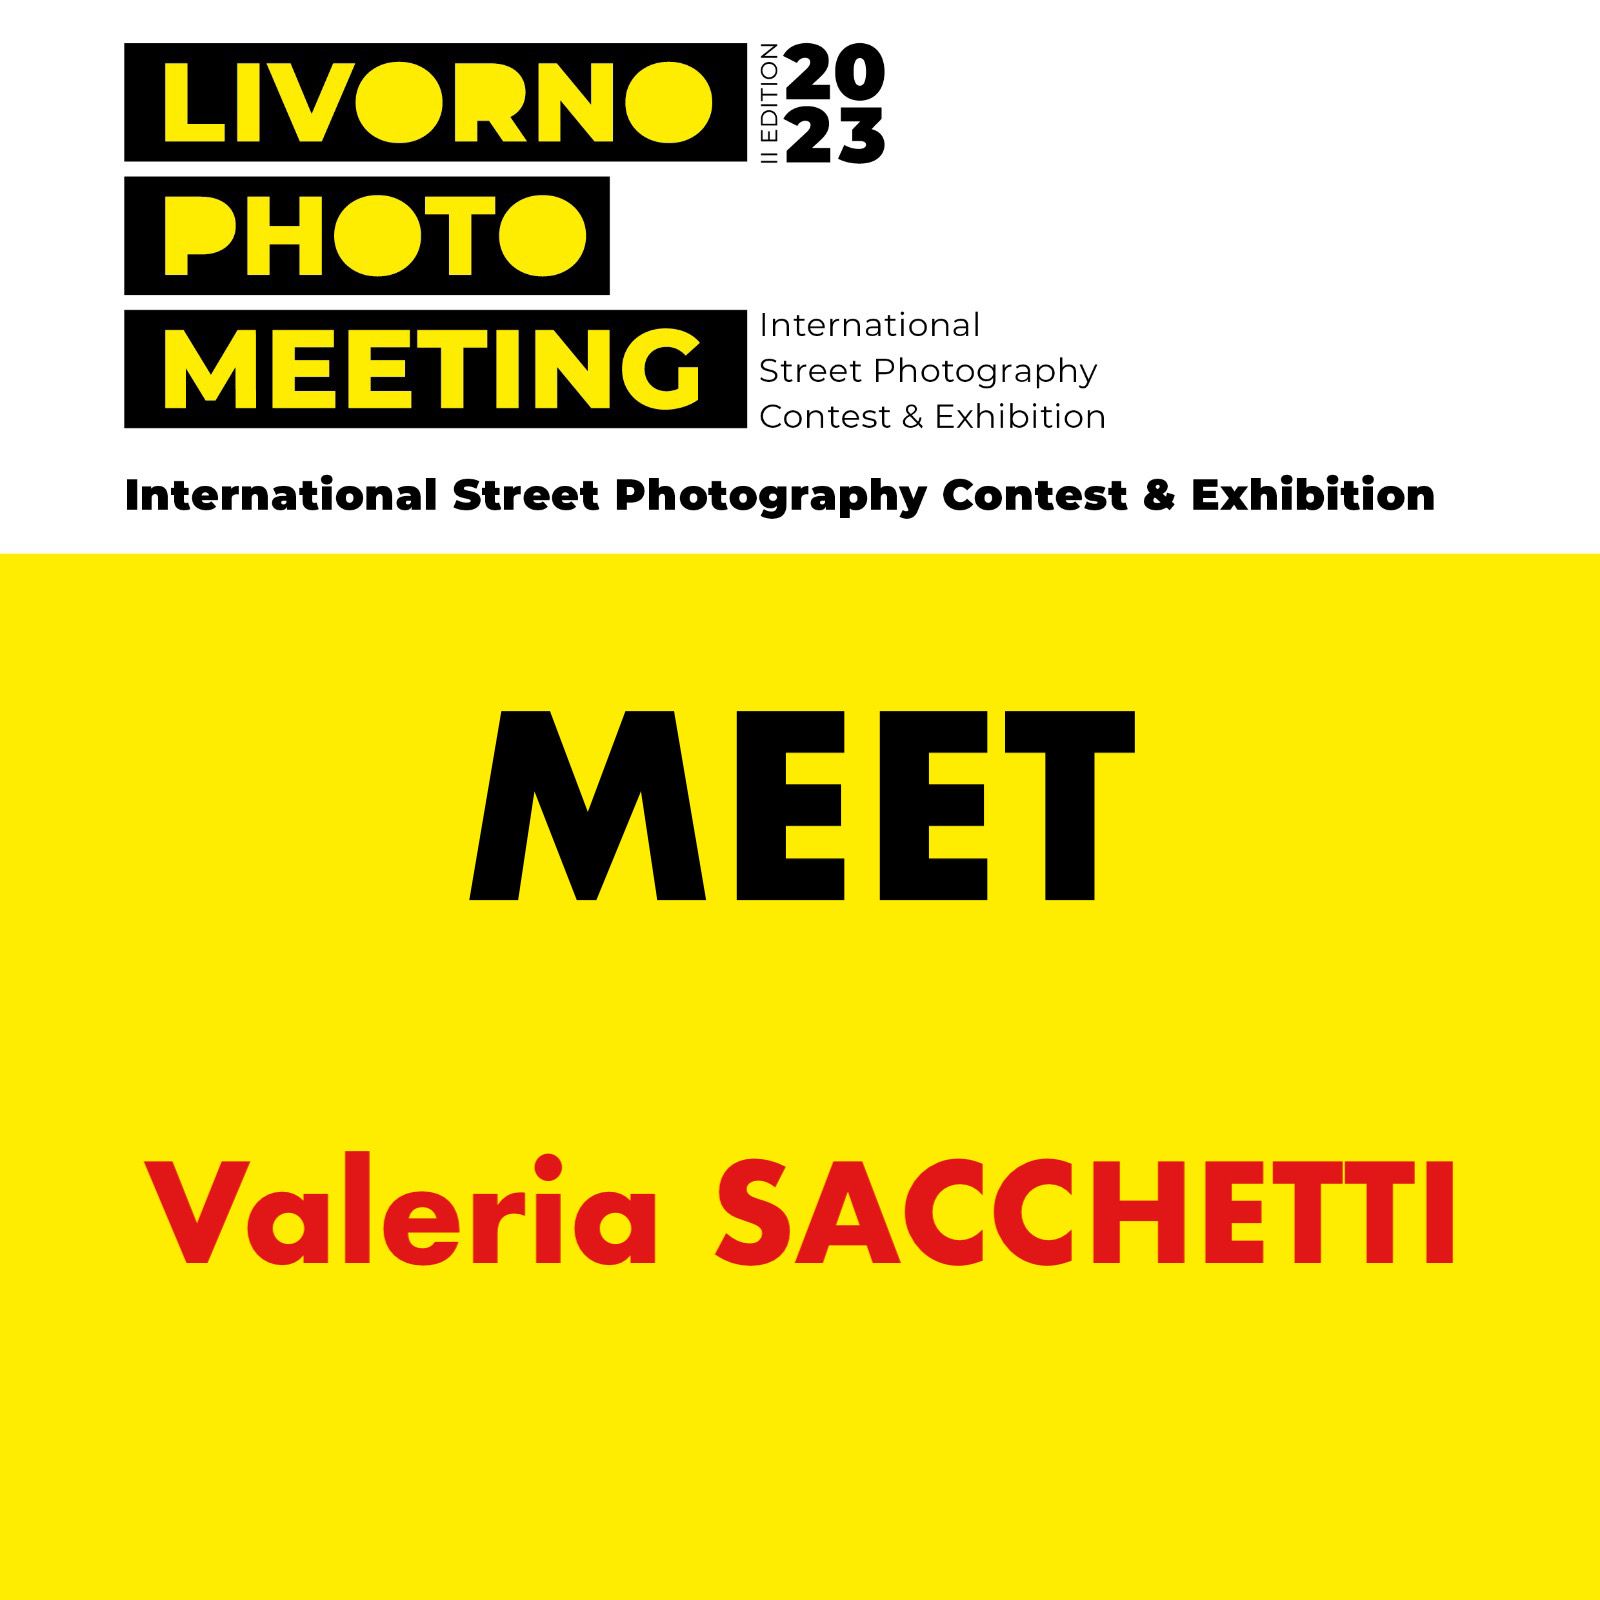 MEET Valeria Sacchetti